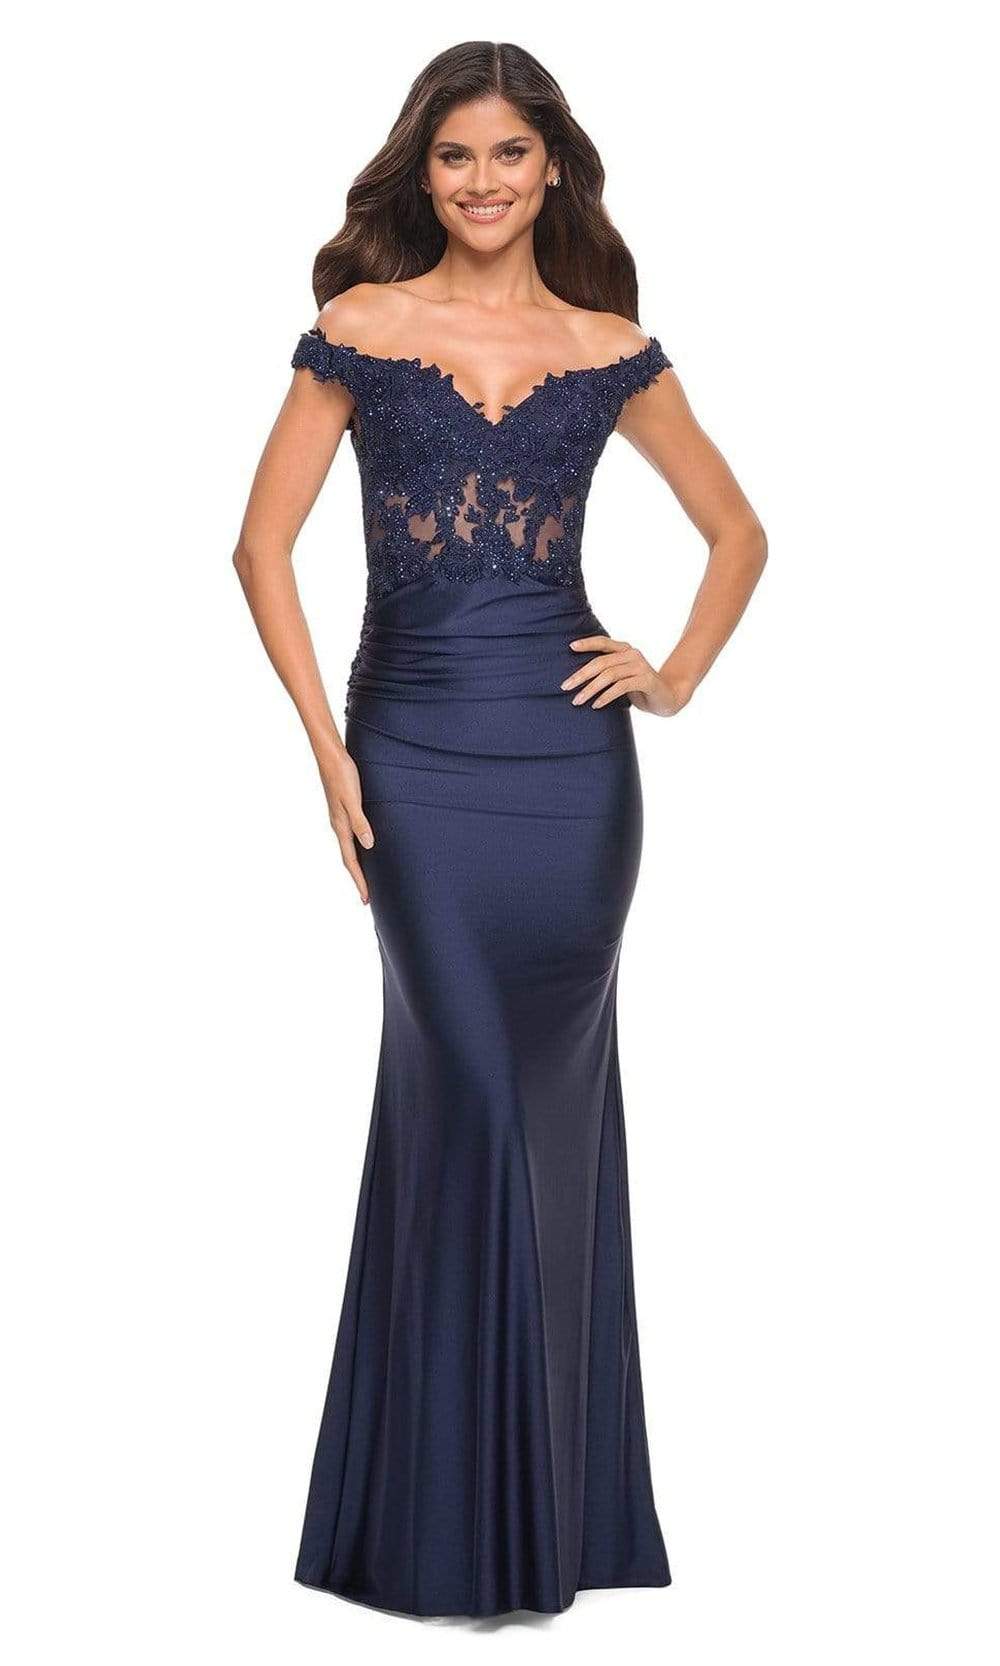 La Femme - 30741 Illusion Lace Top Long Dress
